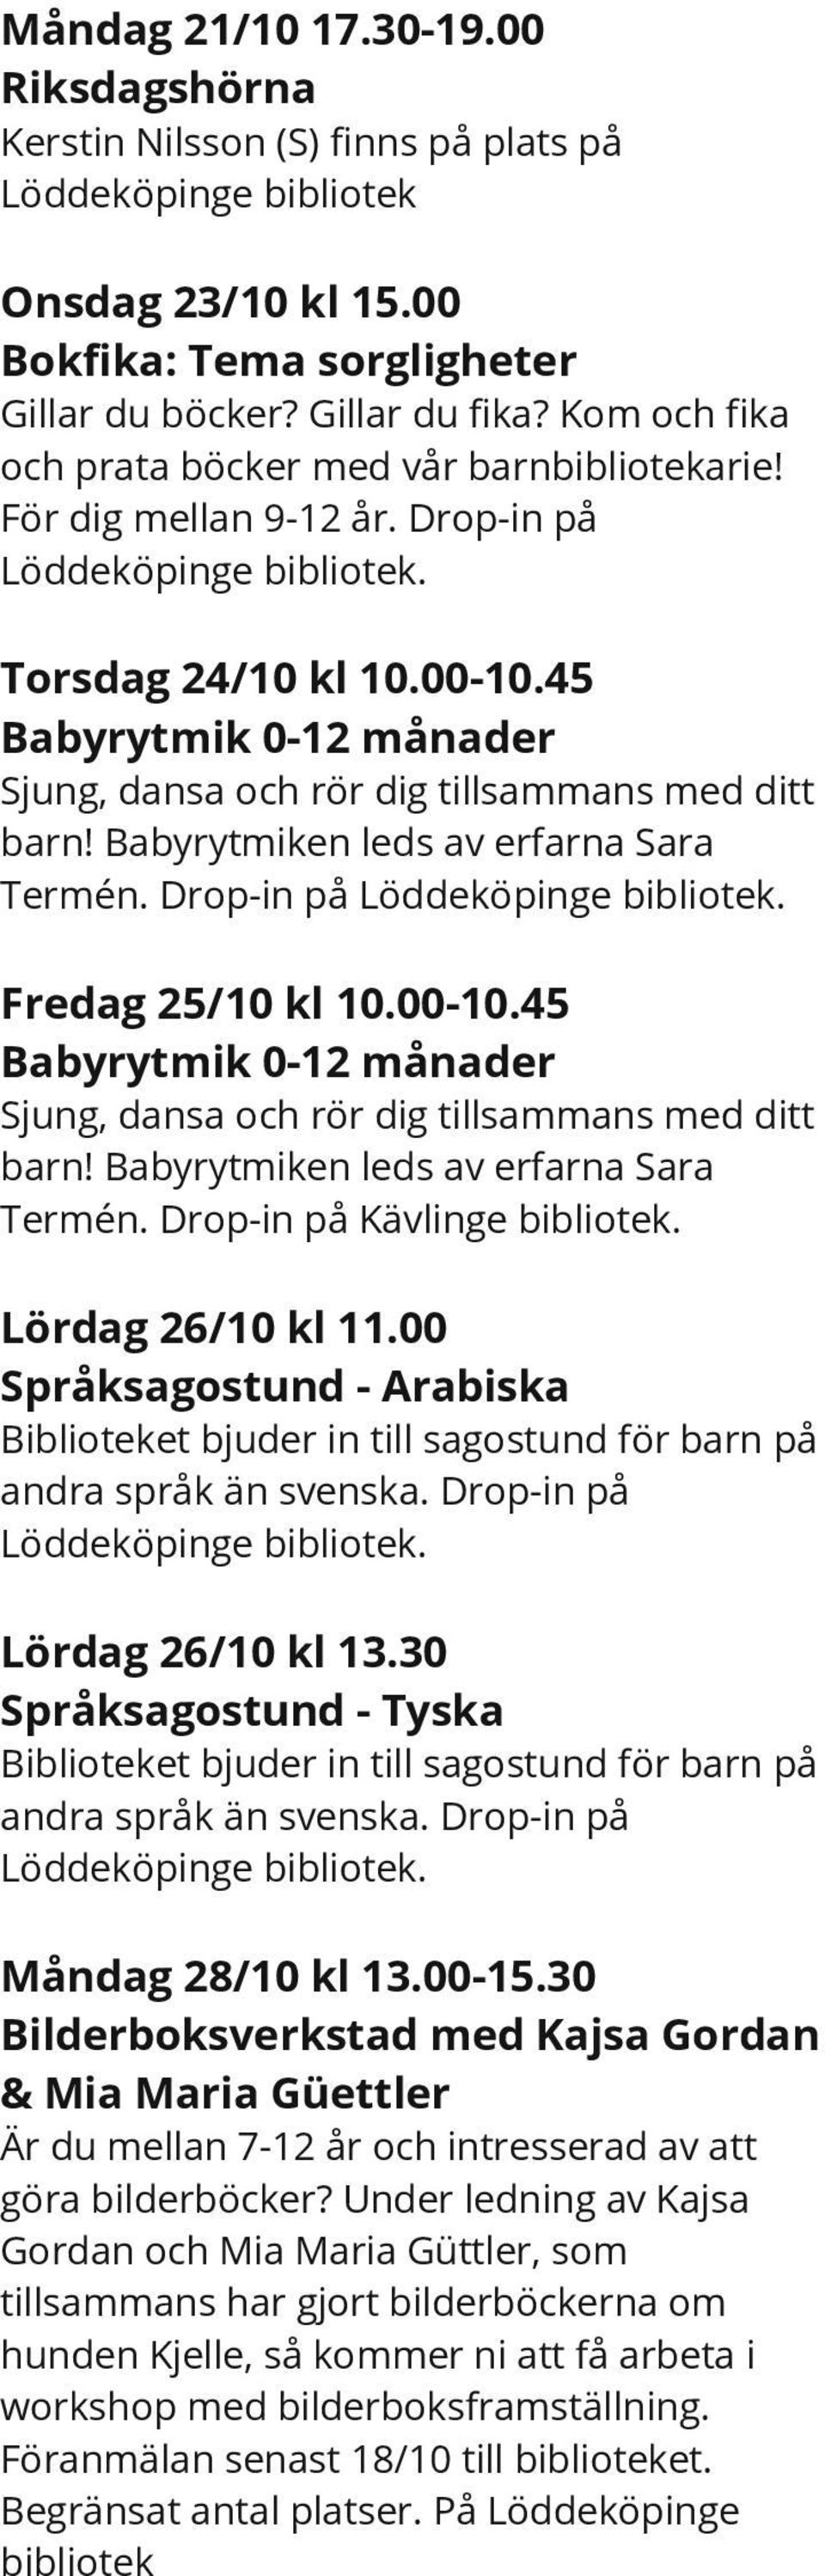 45 Babyrytmik 0-12 månader Sjung, dansa och rör dig tillsammans med ditt barn! Babyrytmiken leds av erfarna Sara Termén. Drop-in på Löddeköpinge Fredag 25/10 kl 10.00-10.